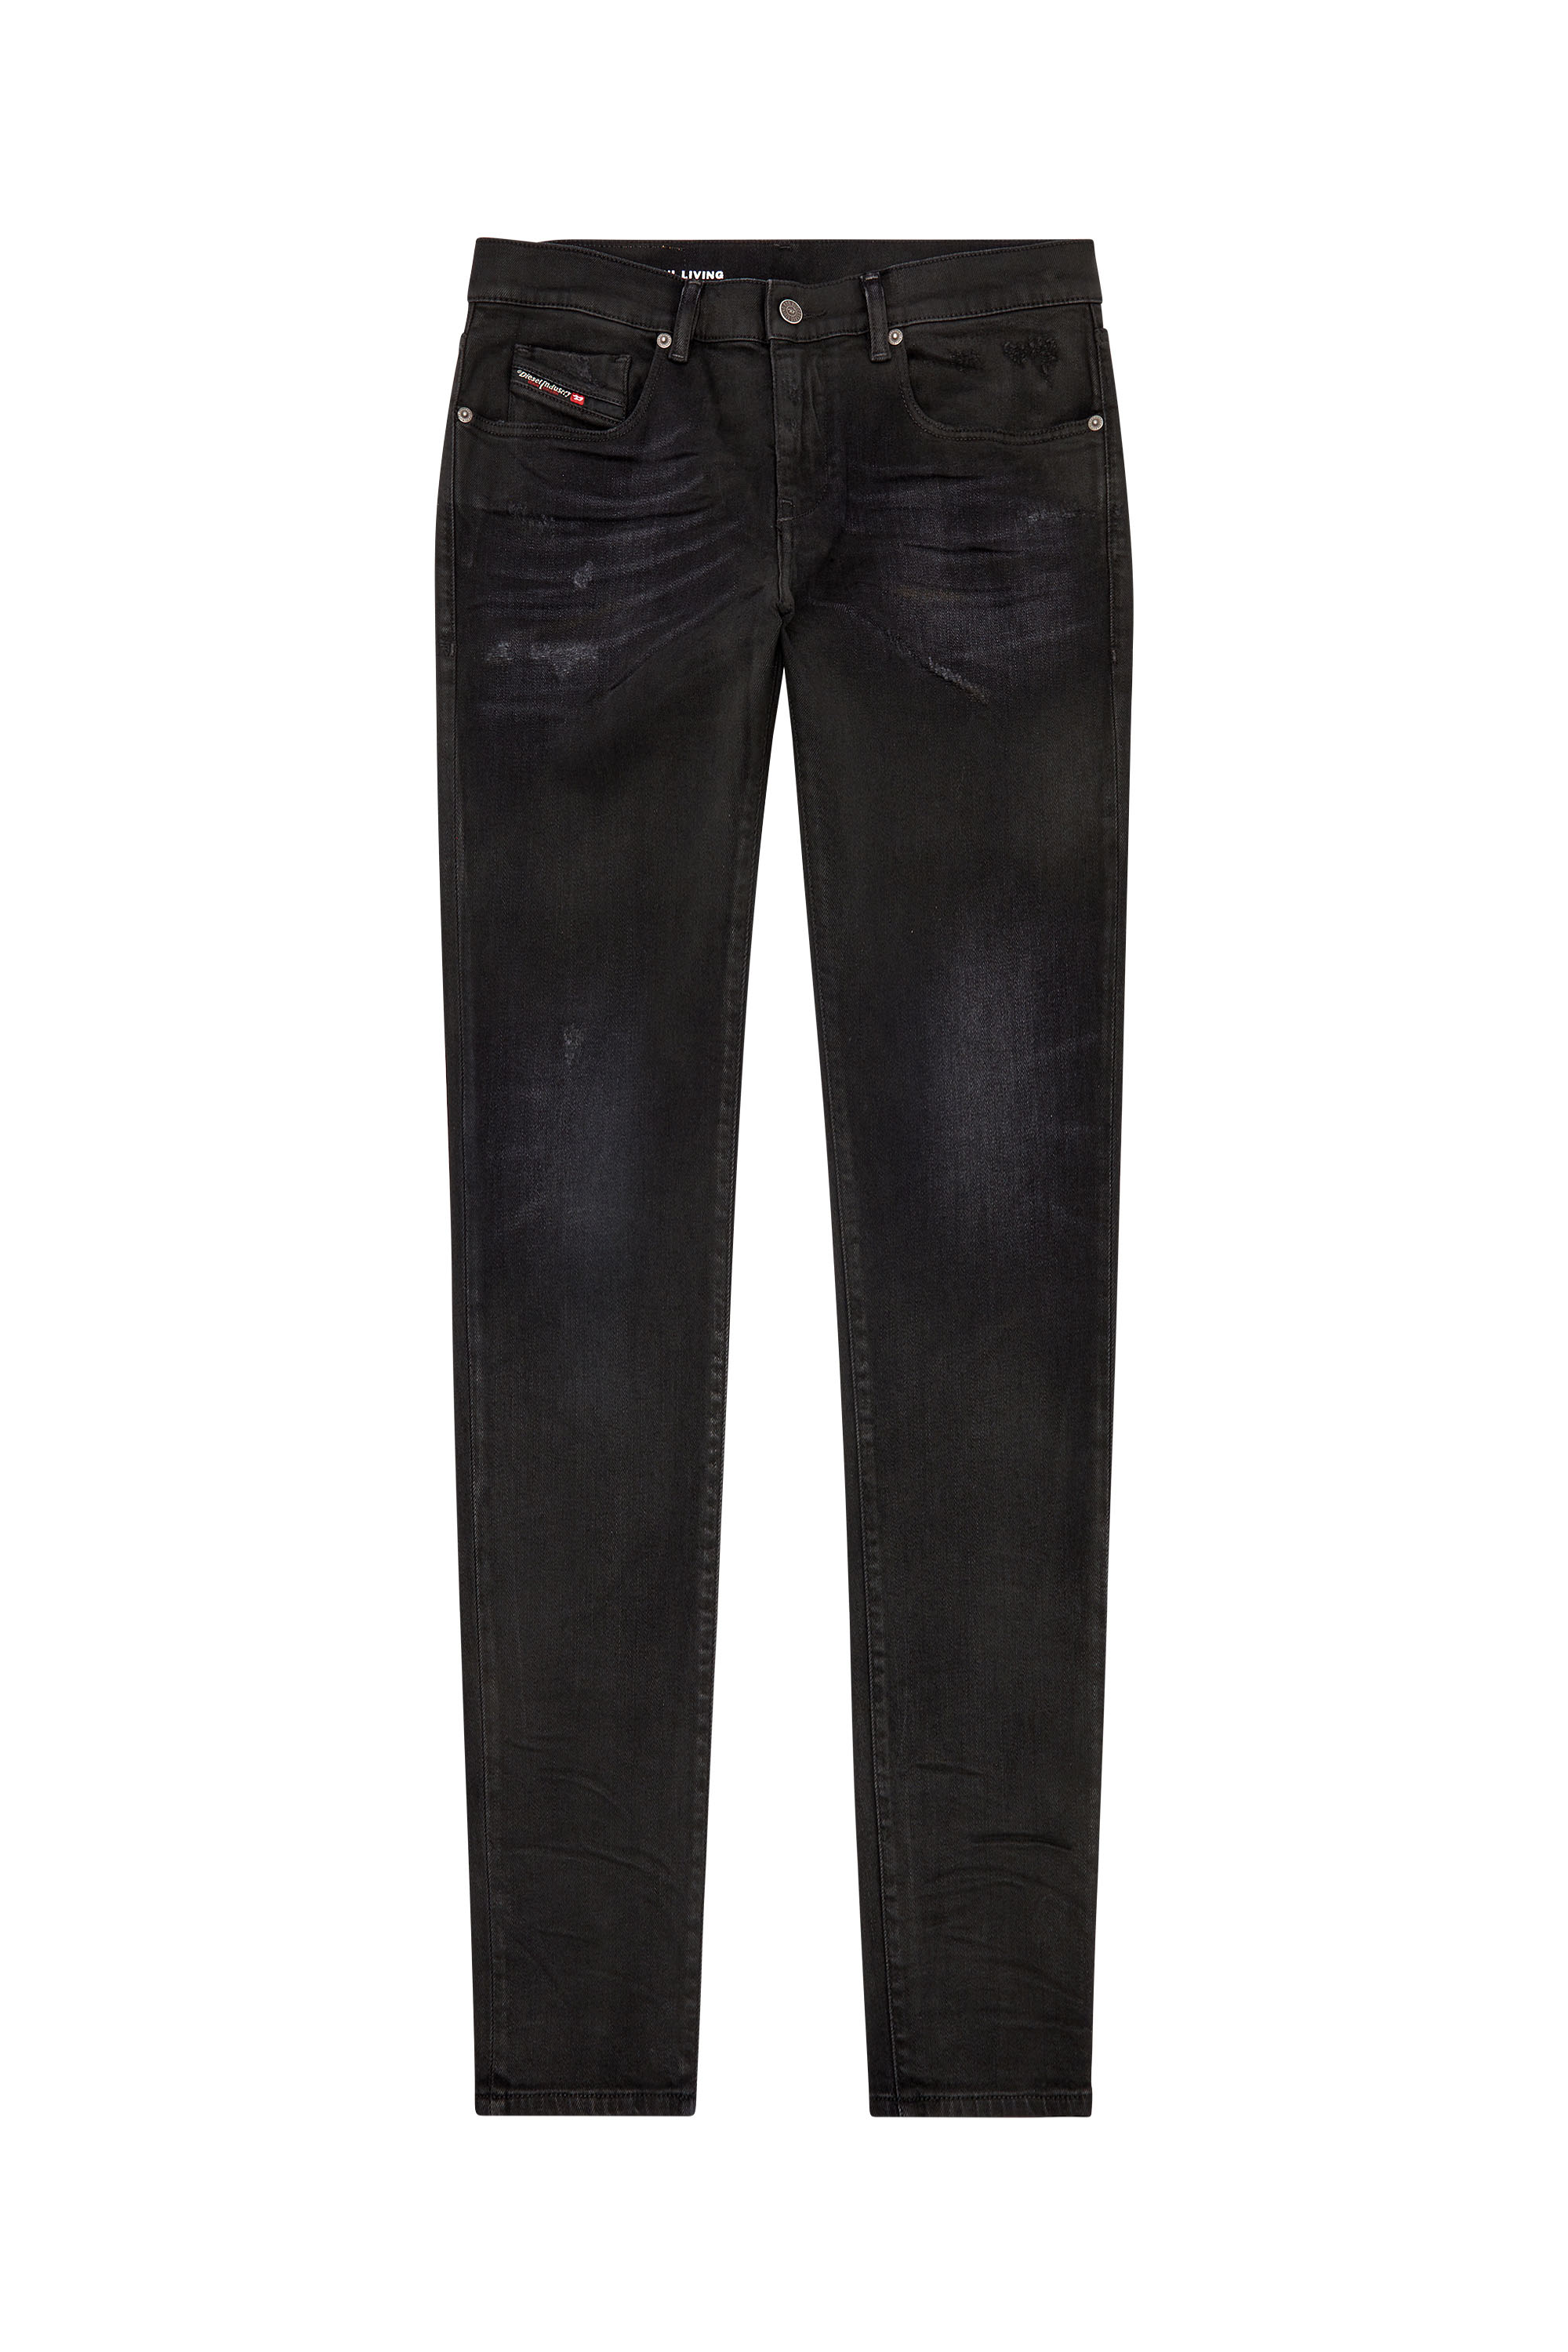 Diesel - Slim Jeans 2019 D-Strukt 09I19, Black/Dark grey - Image 5